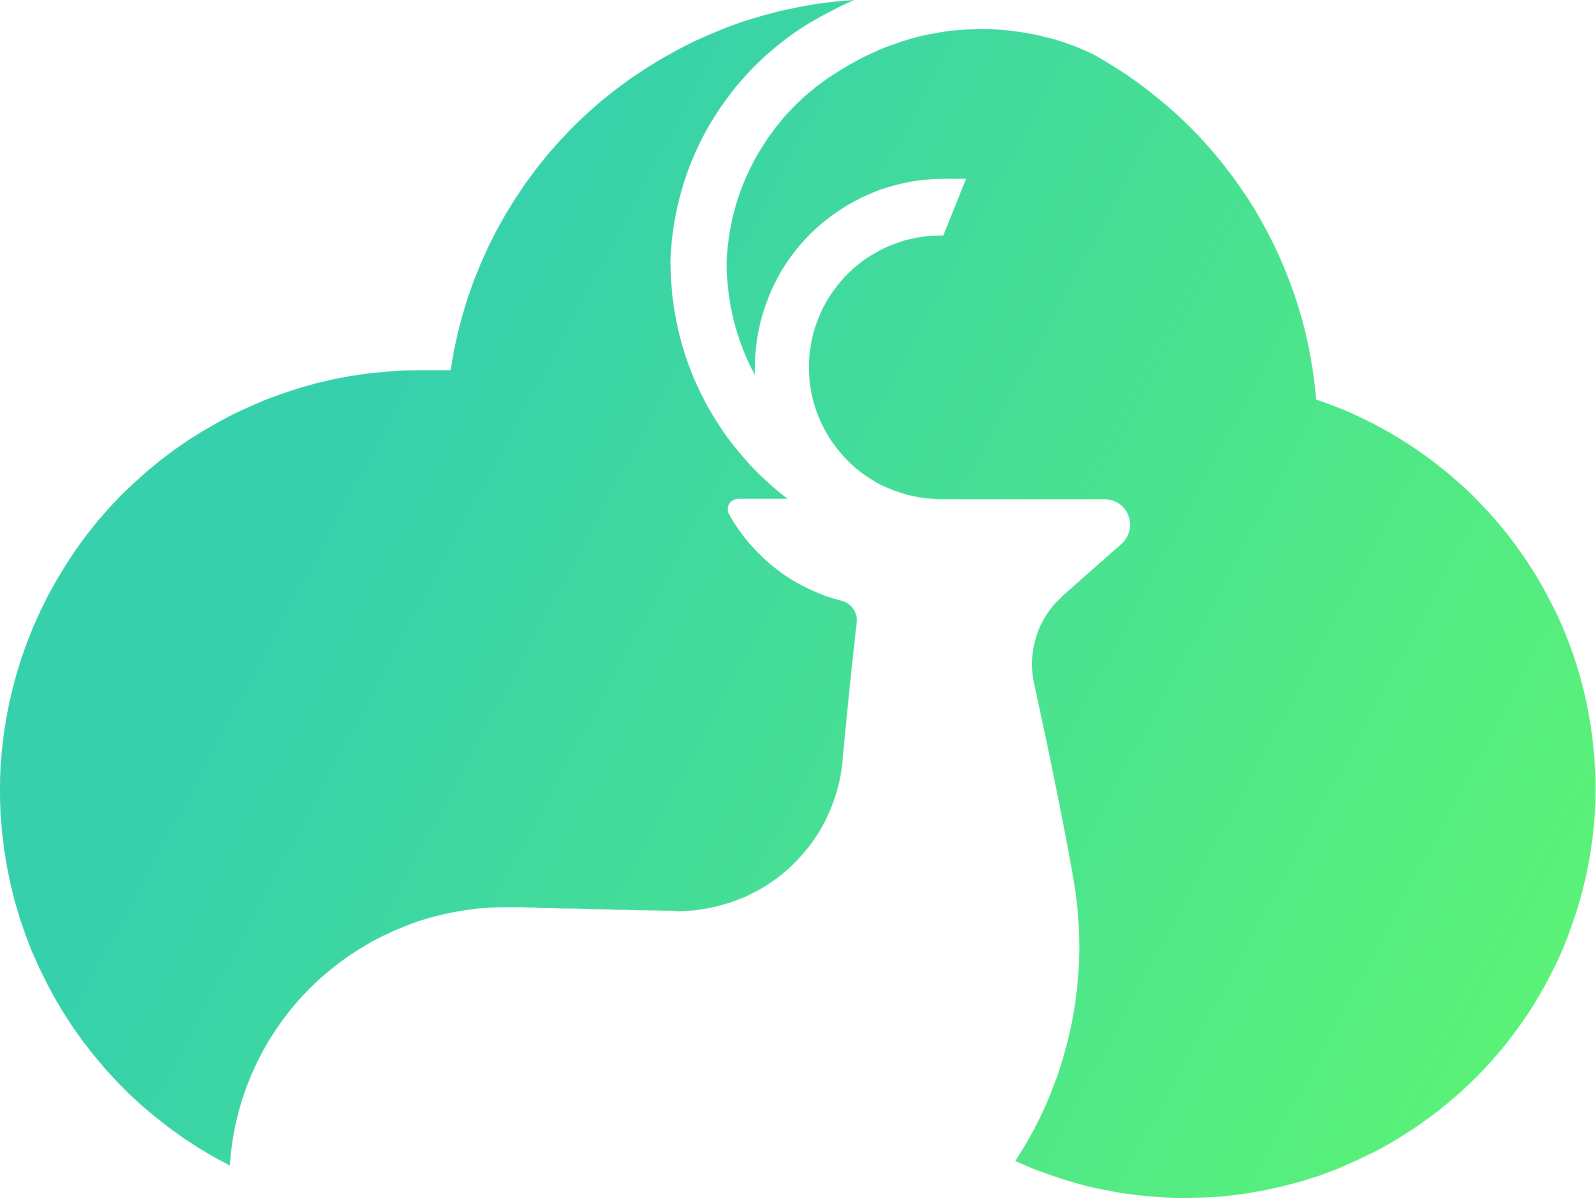 Bitdeer Technologies Group logo (PNG transparent)